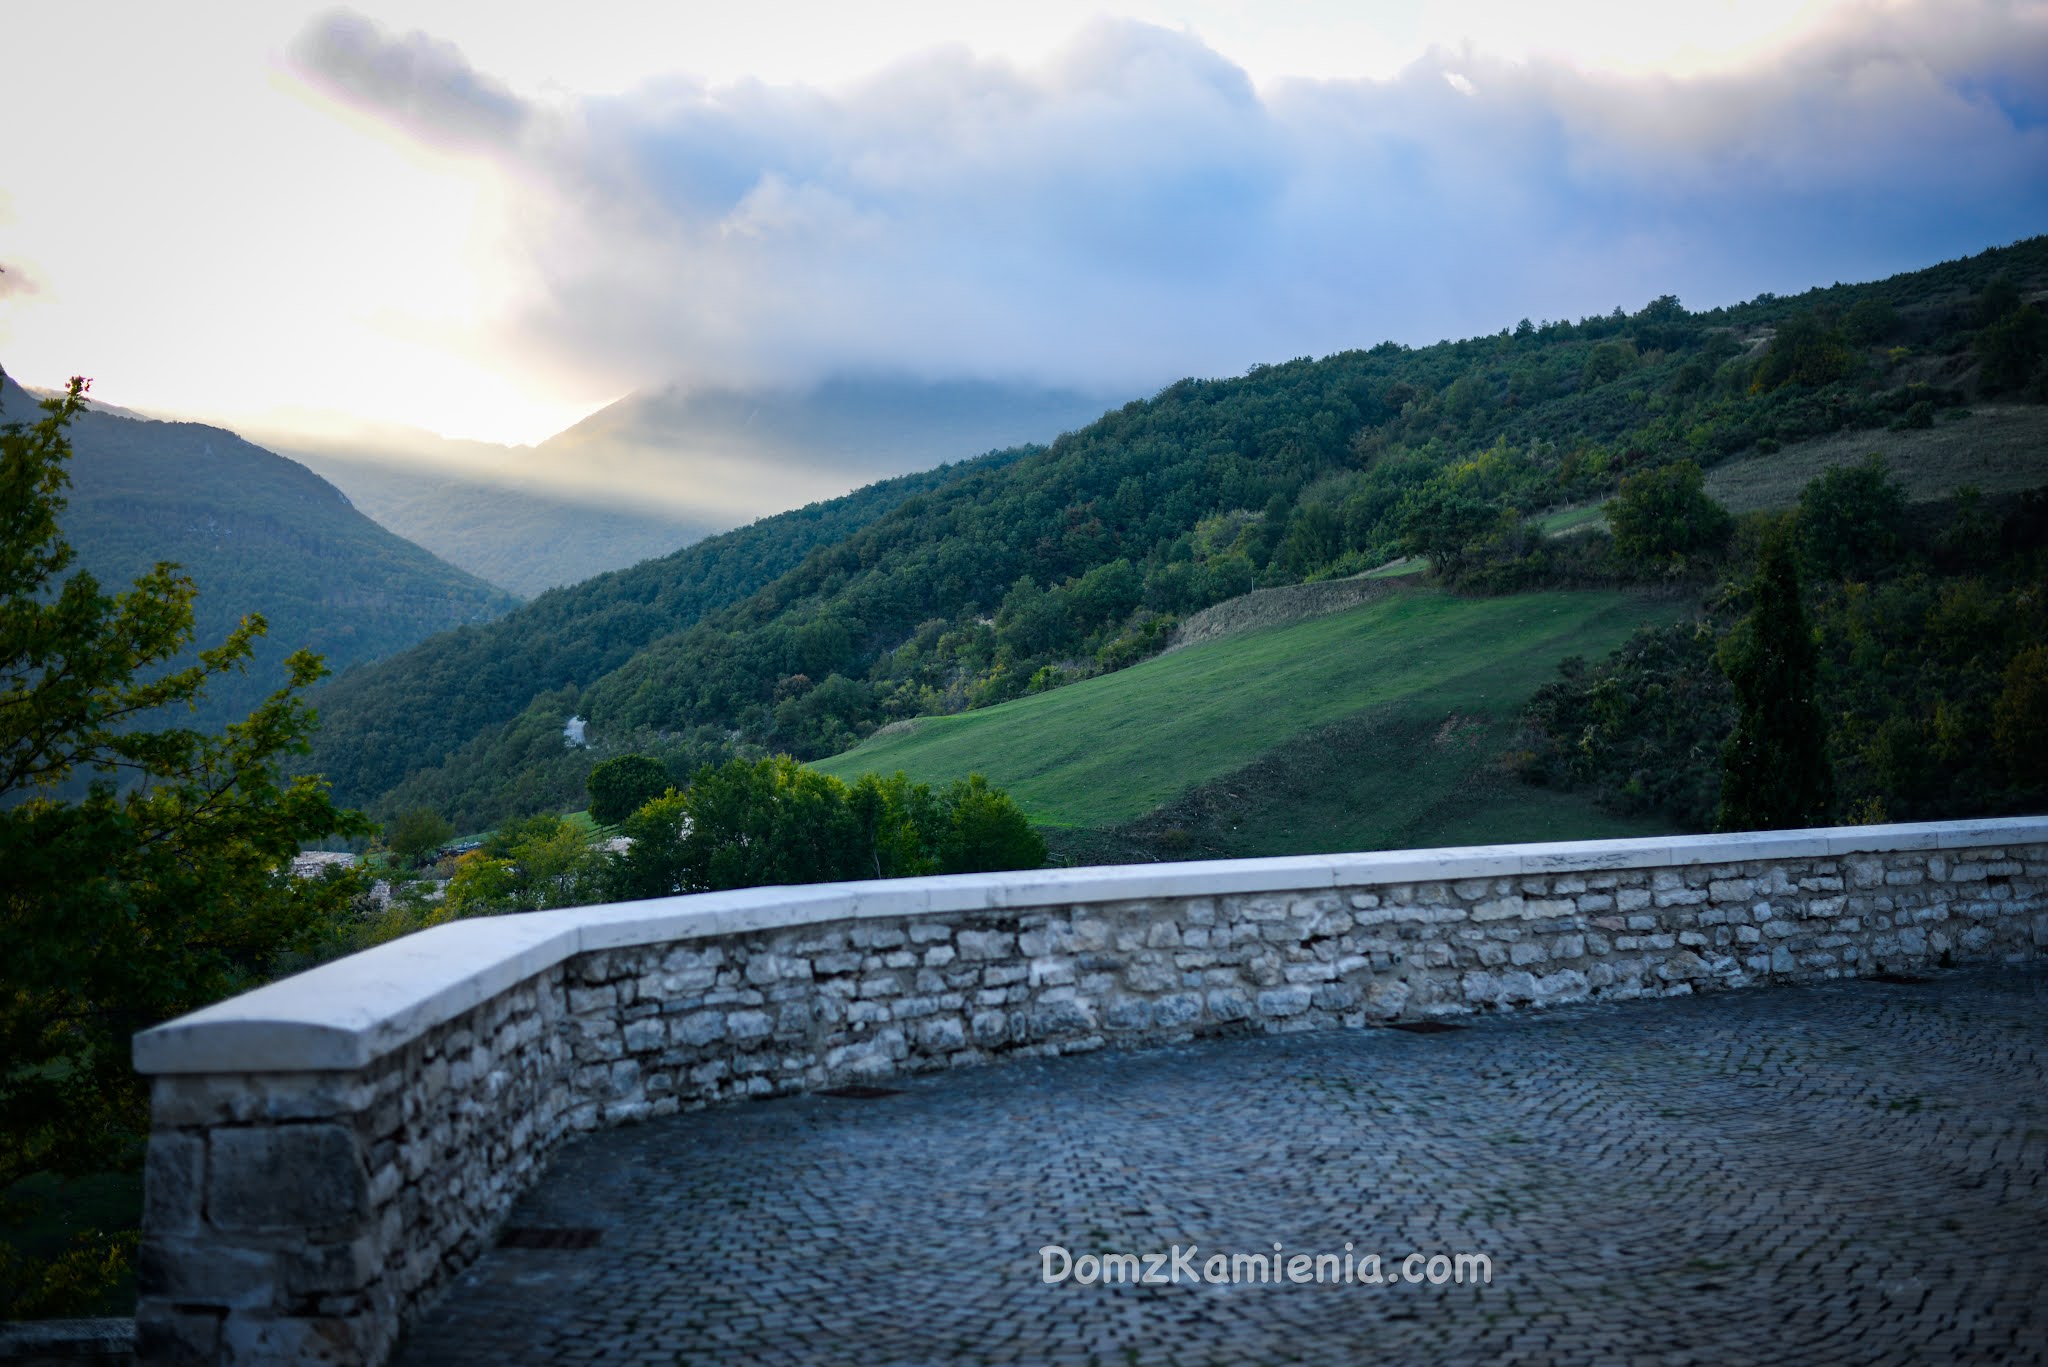 Marche - nieznany region Włoch, Elcito, Dom z Kamienia blog